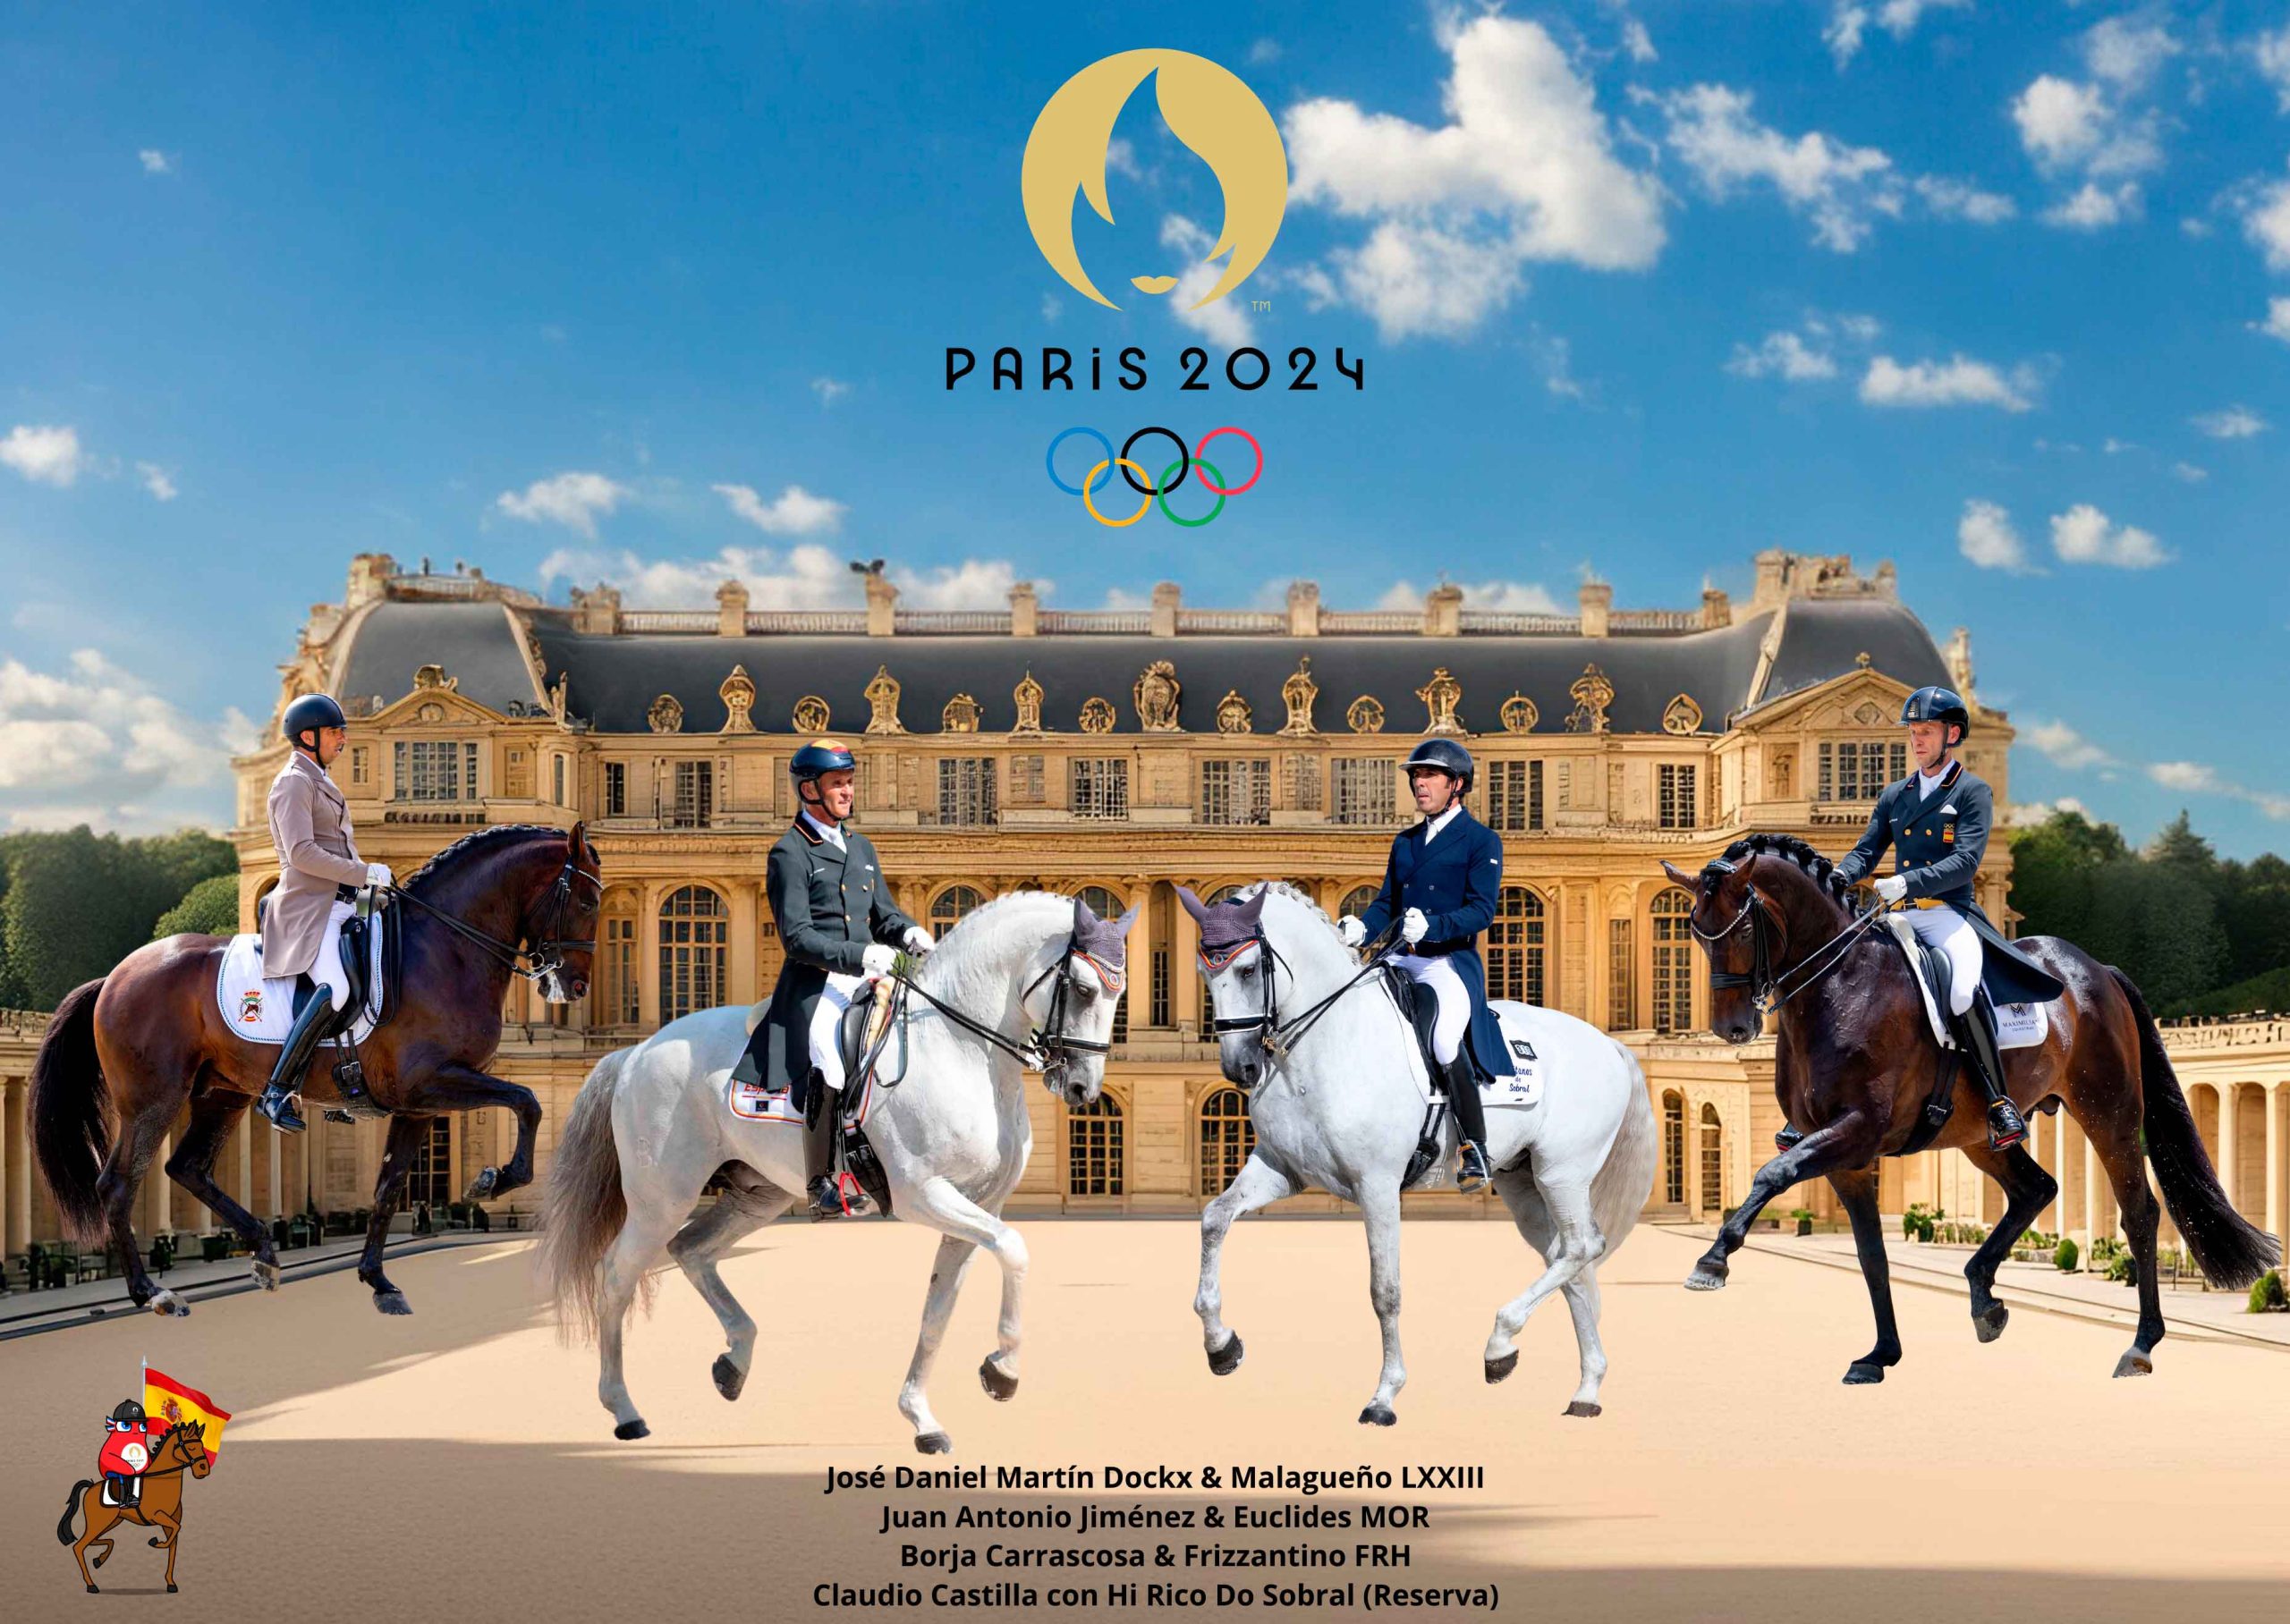 La RFHE anuncia el equipo olímpico para Paris 2024